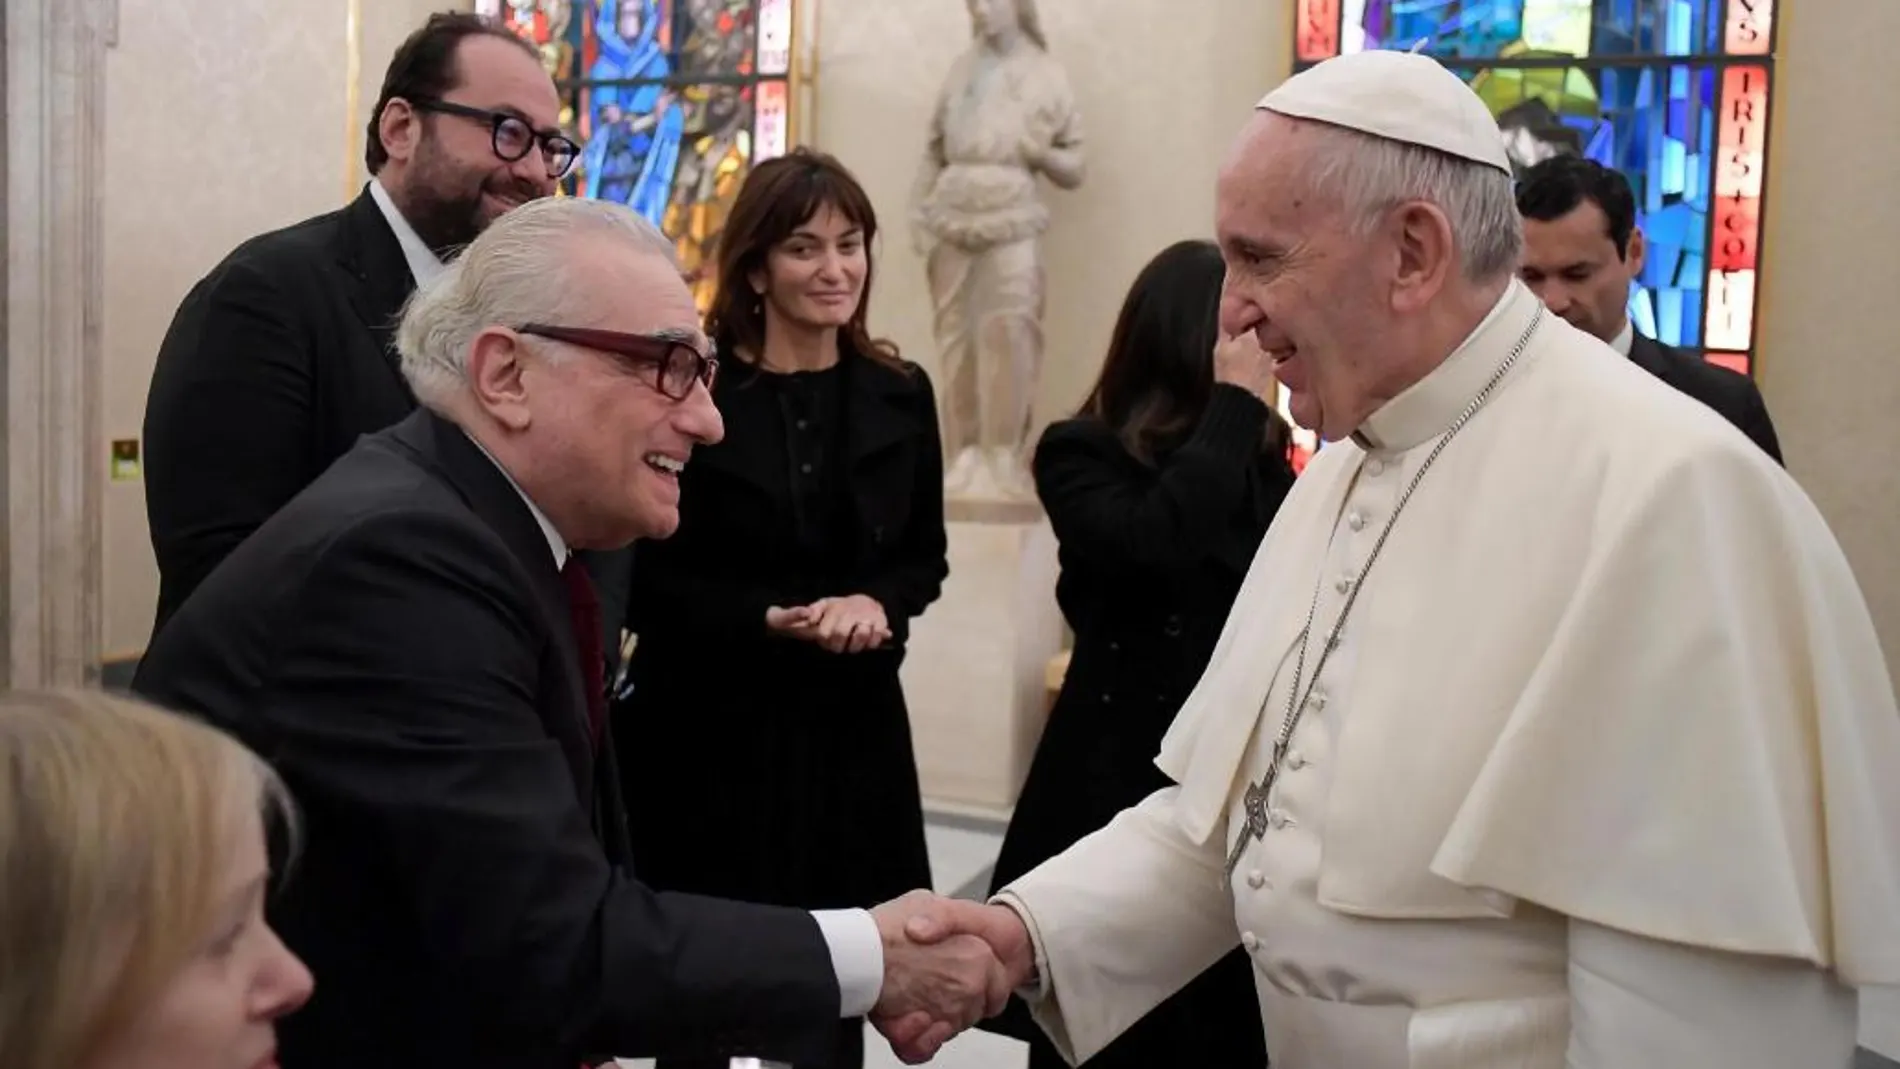 Fotografía facilitada por L'Osservatore Romano que muestra al papa Francisco (d) que saluda al director de cine estadounidense Martin Scorsese (i) durante una audiencia privada en el Vaticano